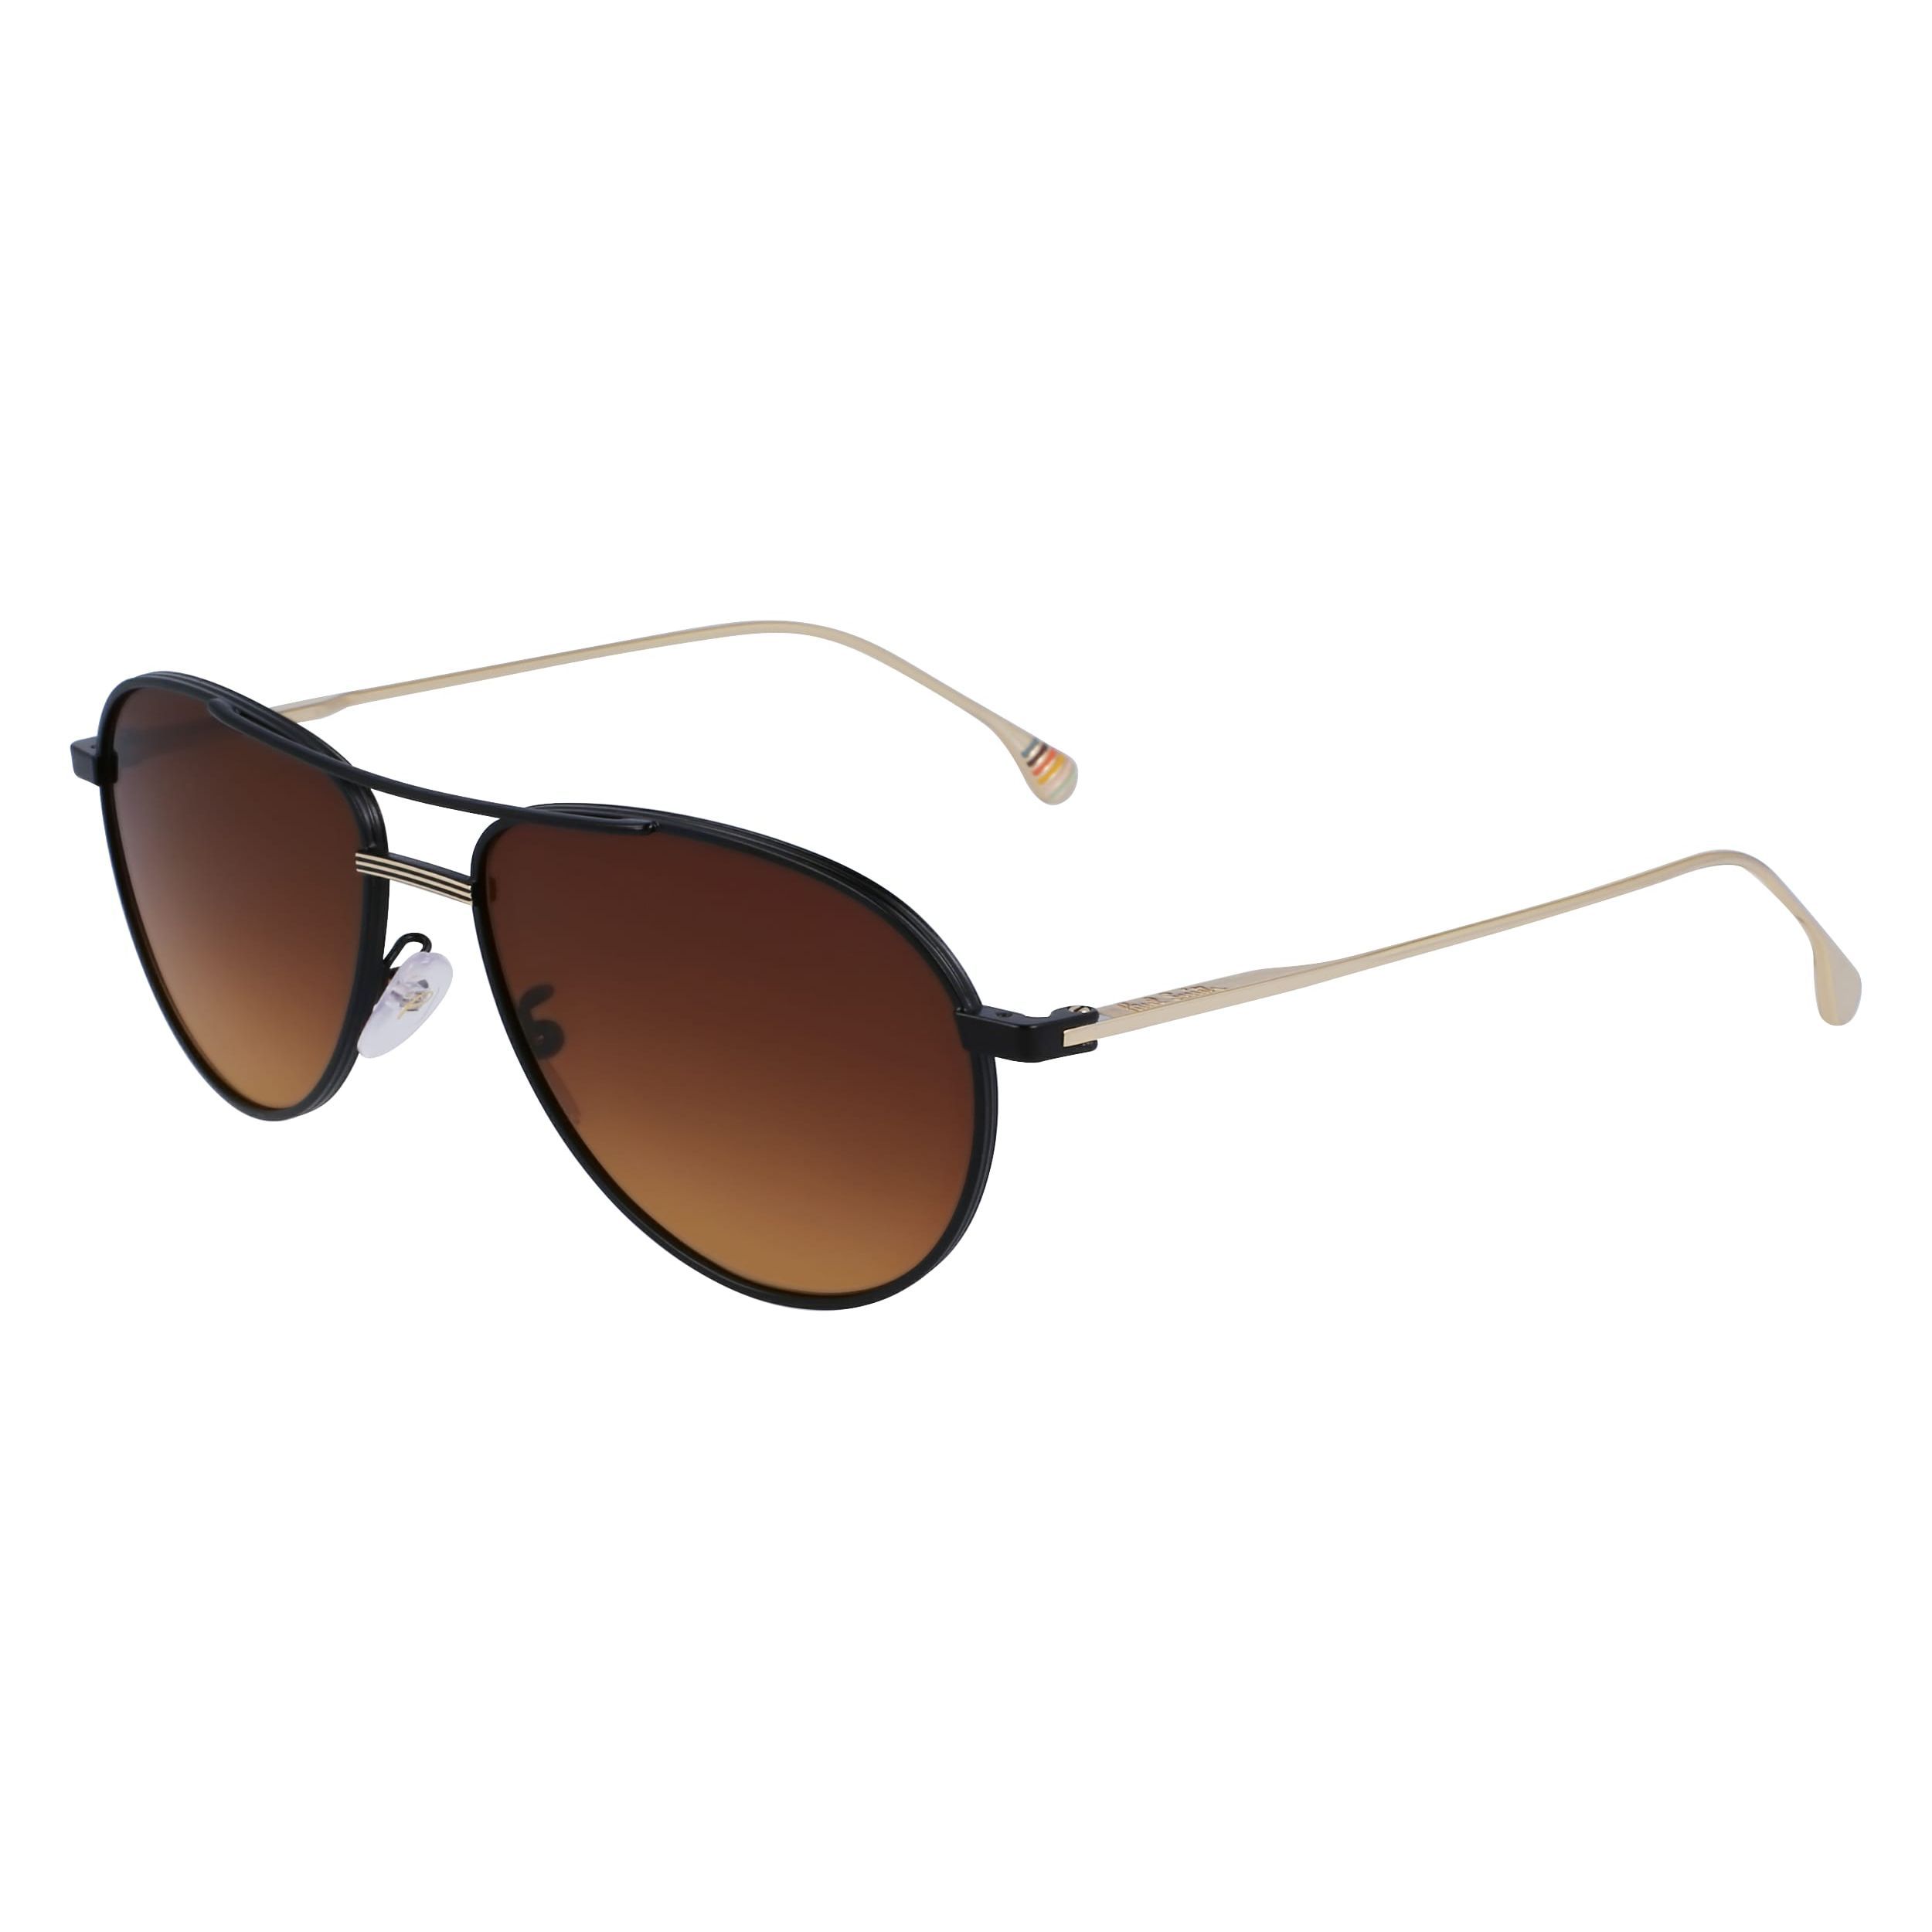 FELIX Pilot Sunglasses 002 - size 57